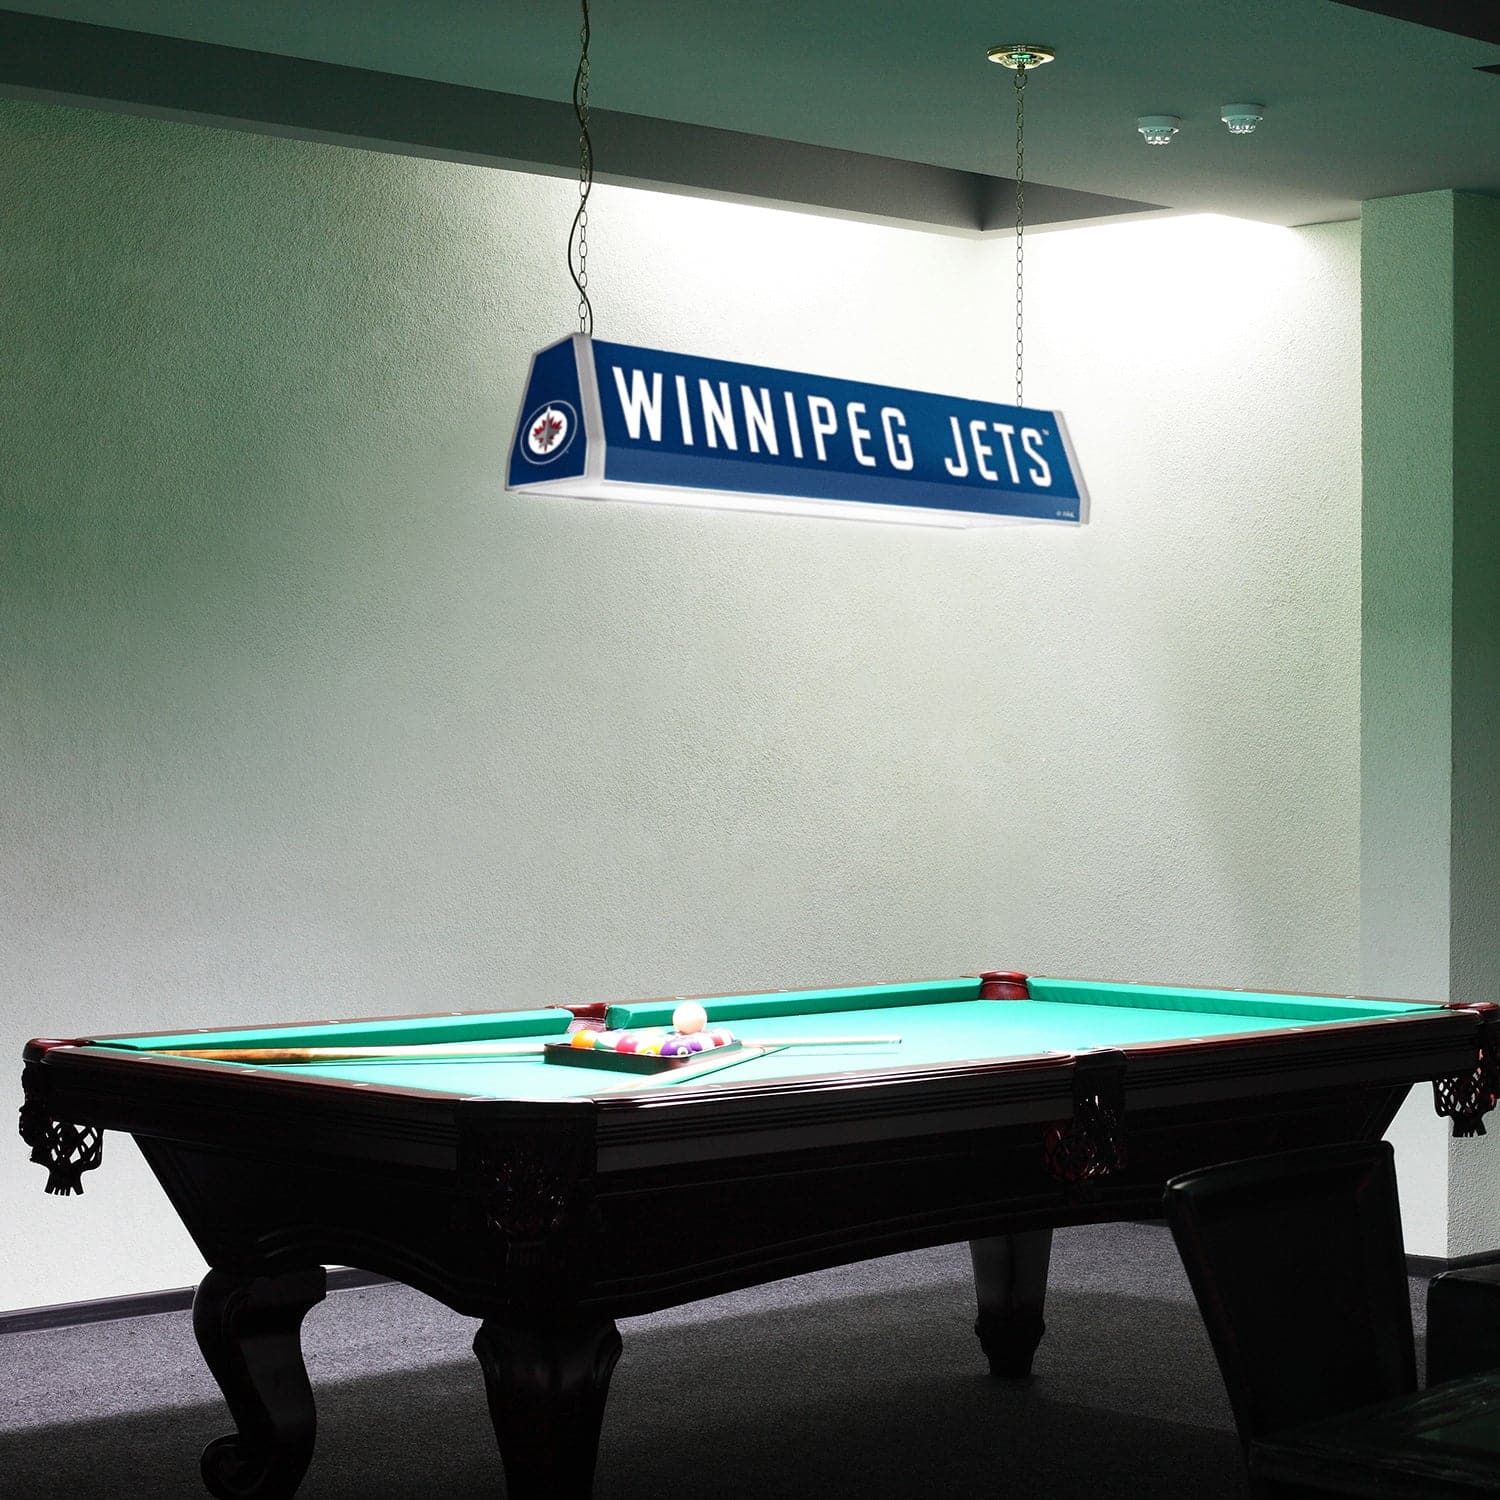 Winnipeg Jets: Standard Pool Table Light - The Fan-Brand